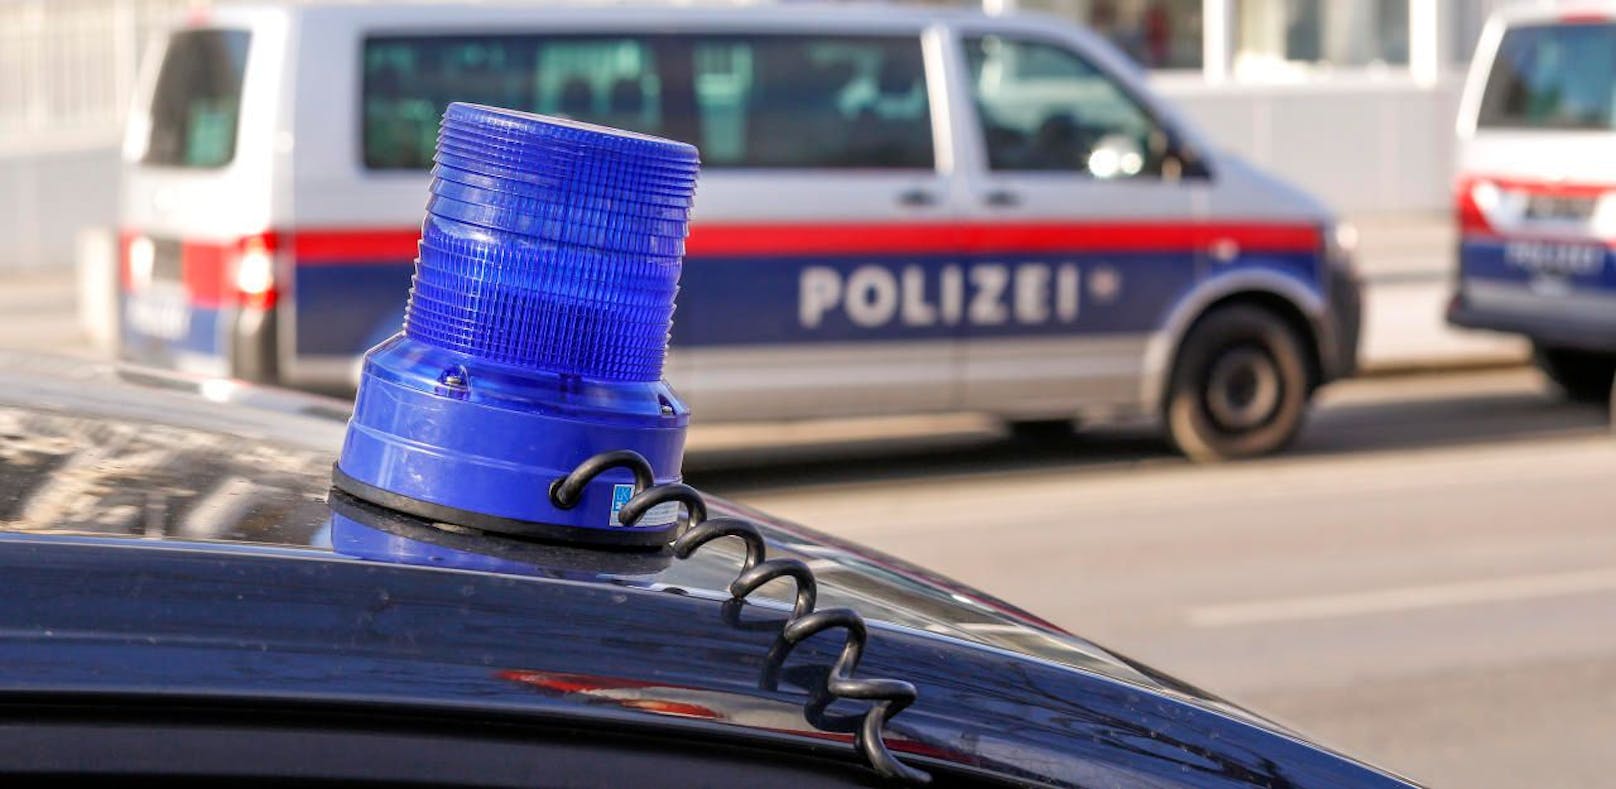 Am Mittwoch stand die Angeklagte vor dem Grazer Straflandesgericht wegen versuchten Mordes und versuchter schwerer Nötigung.